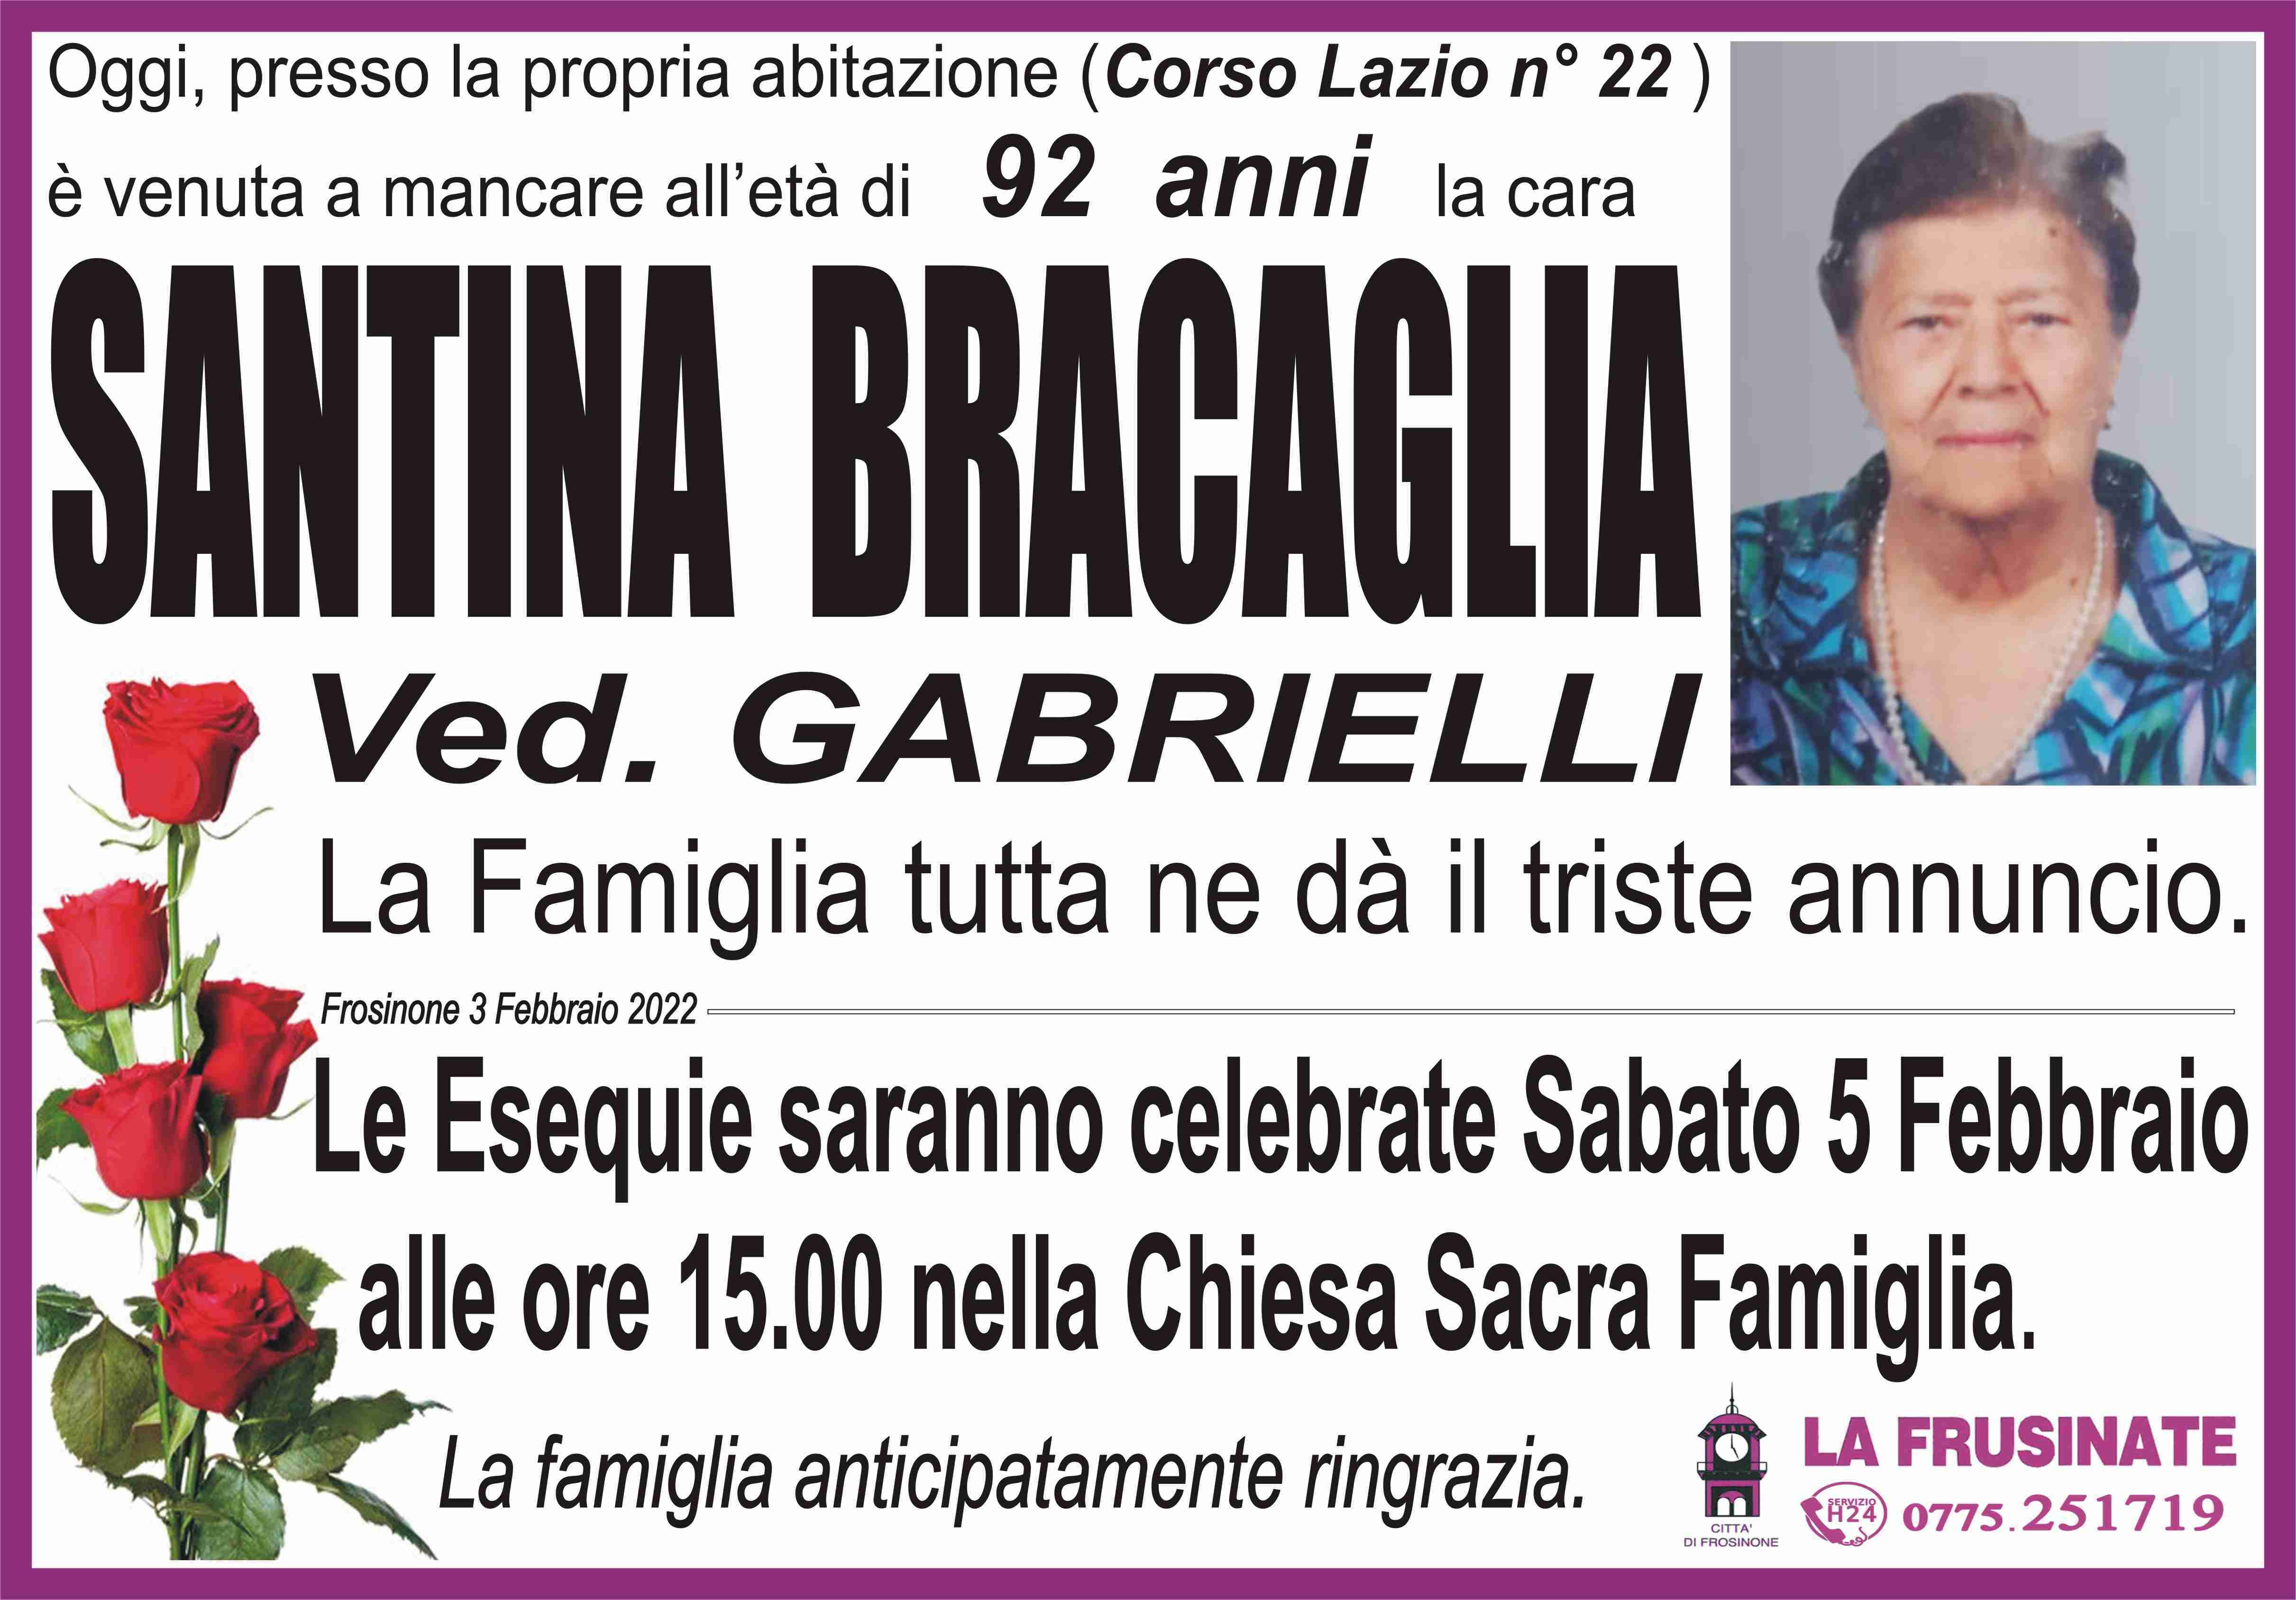 Santina Bracaglia